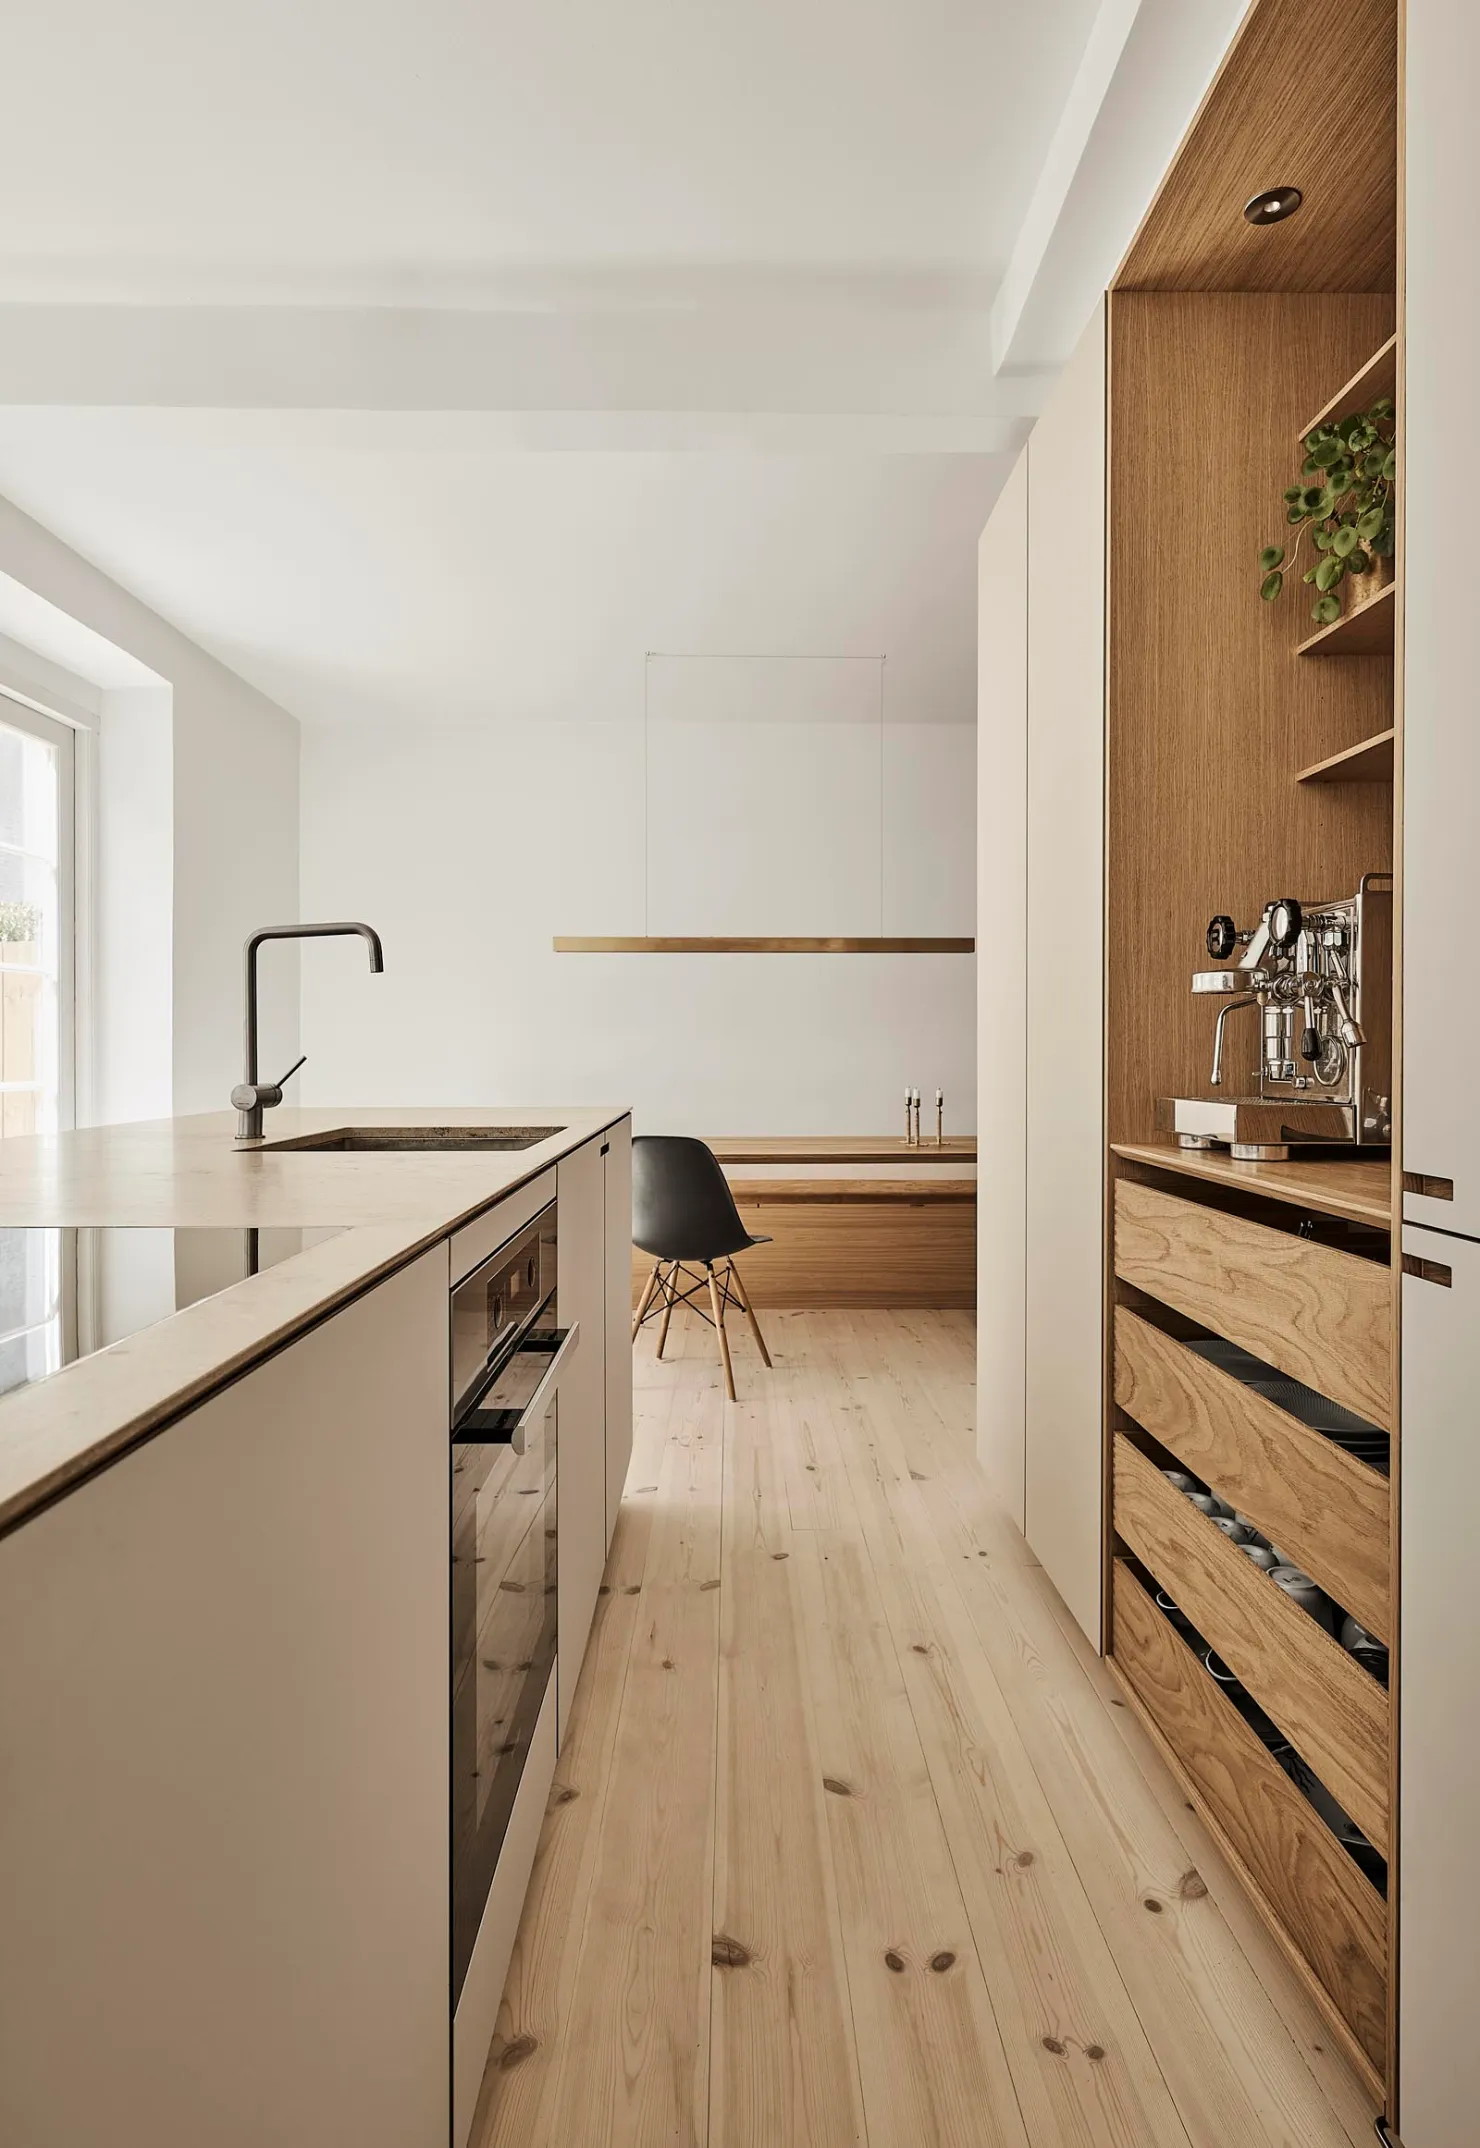 Deense keukenontwerpstudio Nicolaj Bo heeft deze prachtige moderne keuken ontworpen. Tegenover het kookeiland is een kast open kast gecreëerd voor het chique koffiehoekje met genoeg opbergruimte. | Bron: Nicolajbo.dk